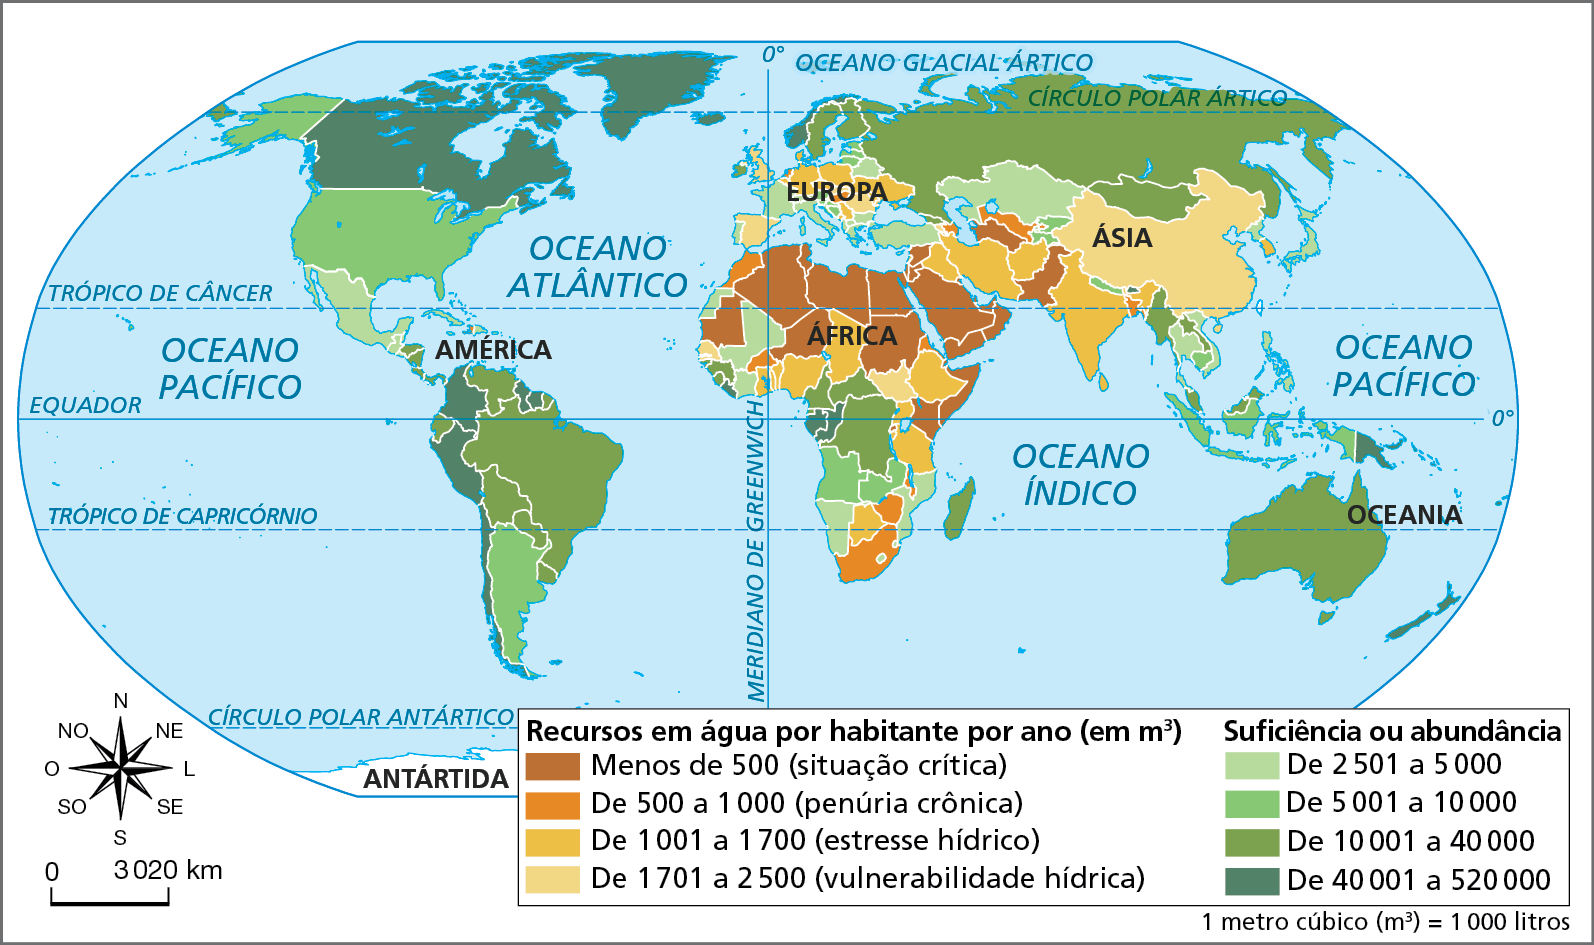 Mapa. Mundo: recursos em água – 2018
Planisfério mostrando a disponibilidade de água por habitante, em métros cúbicos. São oito categorias, diferenciadas por cores que variam do marrom (situação crítica) ao verde escuro (de 40.001 a 520.000 metros cúbicos por habitante)  
Recursos em água por habitantes por ano (em metros cúbicos). Um metros cúbico é igual a mil litros.
Menos de 500 (situação crítica): a maioria dos países do Norte da África e do Oriente Médio, além de Somália, Quênia, Paquistão e Turcomenistão.
De 500 a 1.000 (penúria crônica): África do Sul, Zimbábue, Malauí, Eritreia, Burkina Fasso e Marrocos, na África; Uzbequistão, Azerbaijão e Bangladesh, na Ásia; Hungria, na Europa; e Haiti, na América.
De 1.001 a 1.700 (estresse hídrico): concentrado em alguns países do norte e do leste da África, do centro-leste da Europa e do sul da Ásia, como a Índia.
De 1.701 a 2.500 (vulnerabilidade hídrica): Sudão do Sul e Senegal, na África; China e Armênia, na Ásia; Espanha, Reino Unido, Eslováquia e Romênia, na Europa.
Países com suficiência ou abundância em água 
De 2.501 a 5.000: Países da América Central, do oeste e do sul da África, da Europa Ocidental e da Ásia, com destaque para o sudeste do continente. 
De 5.001 a 10.000: Argentina e Estados Unidos, na América; Angola e Zâmbia, na África; países da Ásia Central e, principalmente, do sudeste asiático.
De 10.001 a 40.000: a maior dos países da América Sul, entre eles o Brasil, países da África Central, Oceania, Rússia, países do leste asiático e do norte da Europa.
De 40.001 a 520.000: Canadá, Chile, Peru, Colômbia, Guiana e Suriname, na América; países da costa oeste africana e do leste da Oceania; Islândia e Noruega, na Europa.
Na parte inferior, rosa dos ventos e escala de 0 a 3.020 quilômetros.